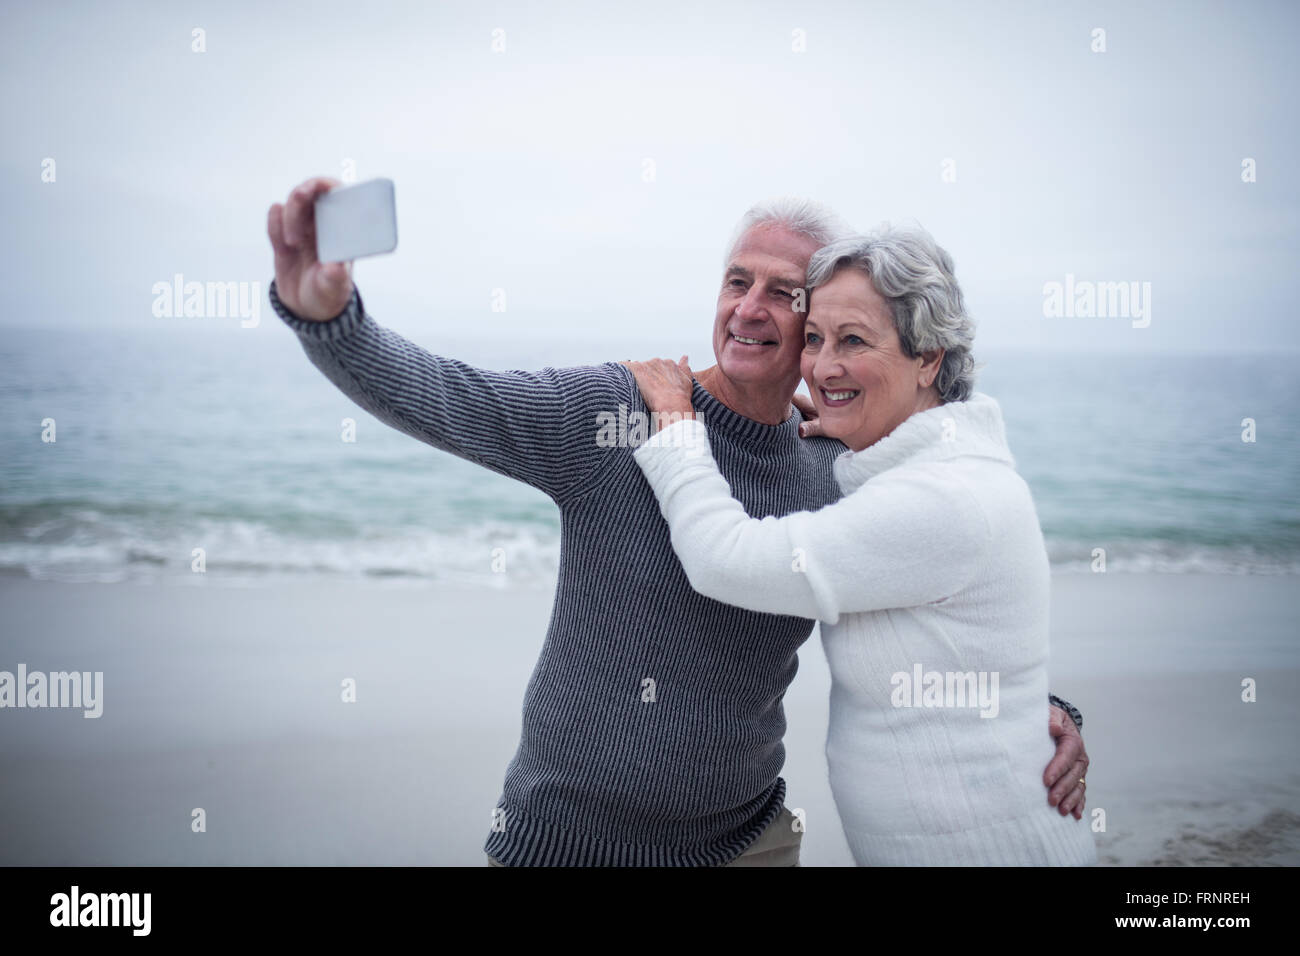 Senior couple taking a selfie on the beach Stock Photo